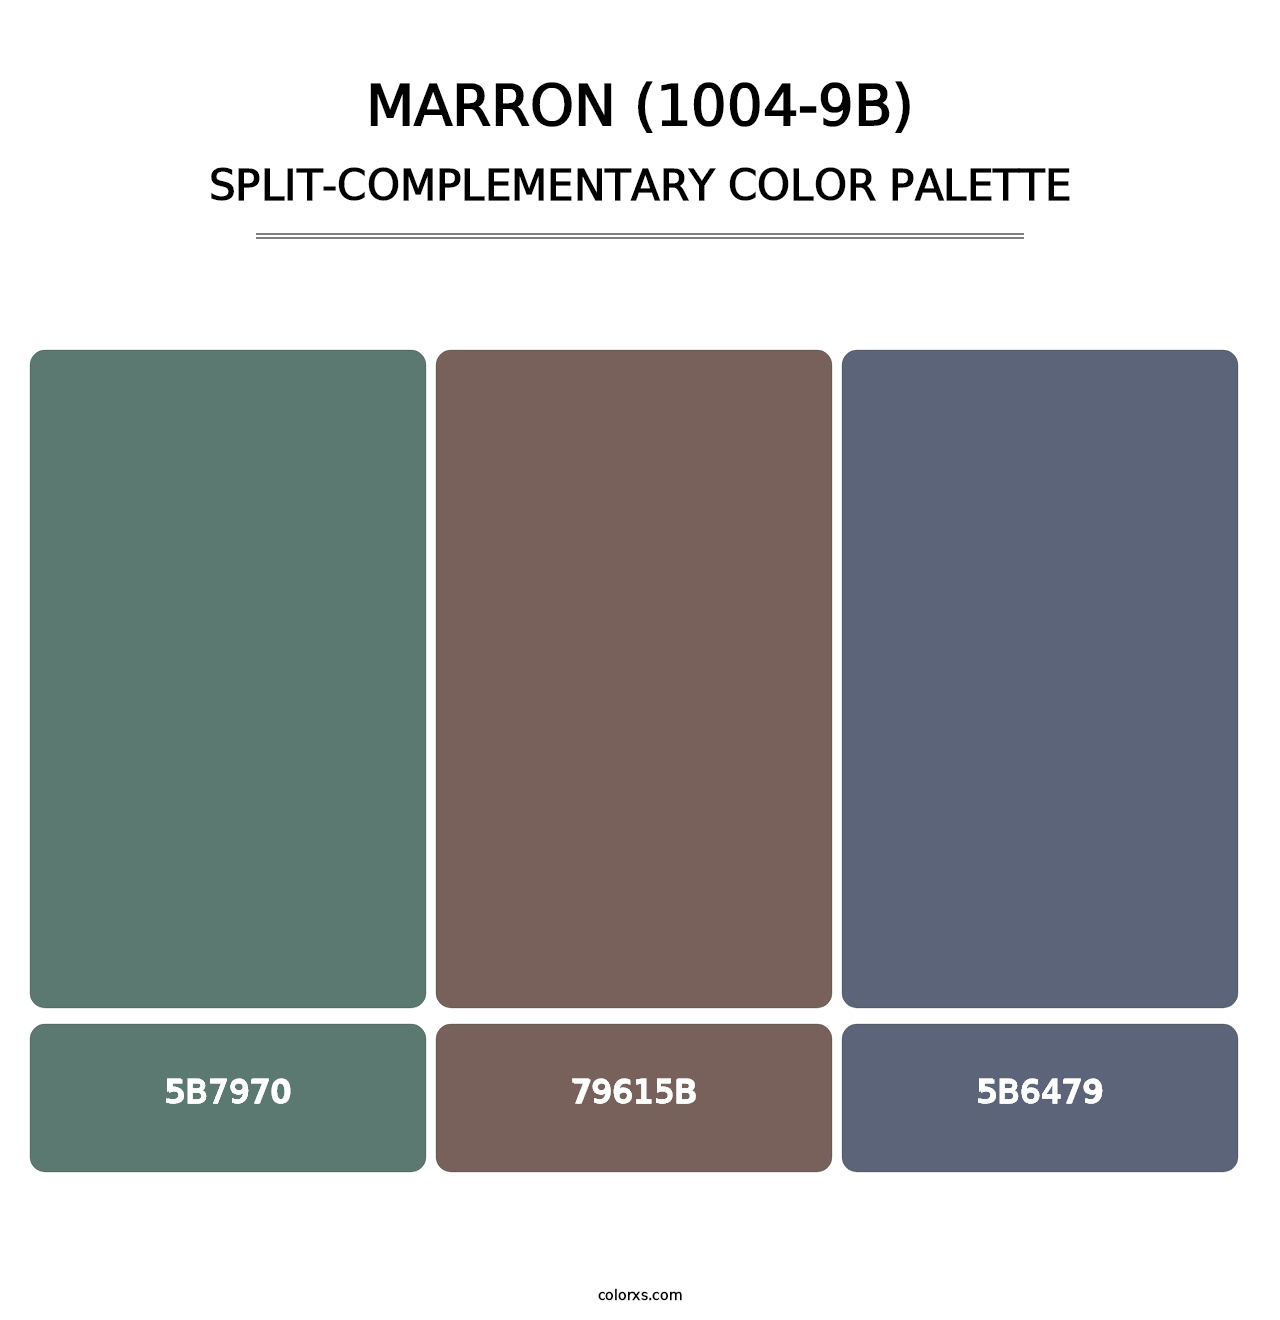 Marron (1004-9B) - Split-Complementary Color Palette